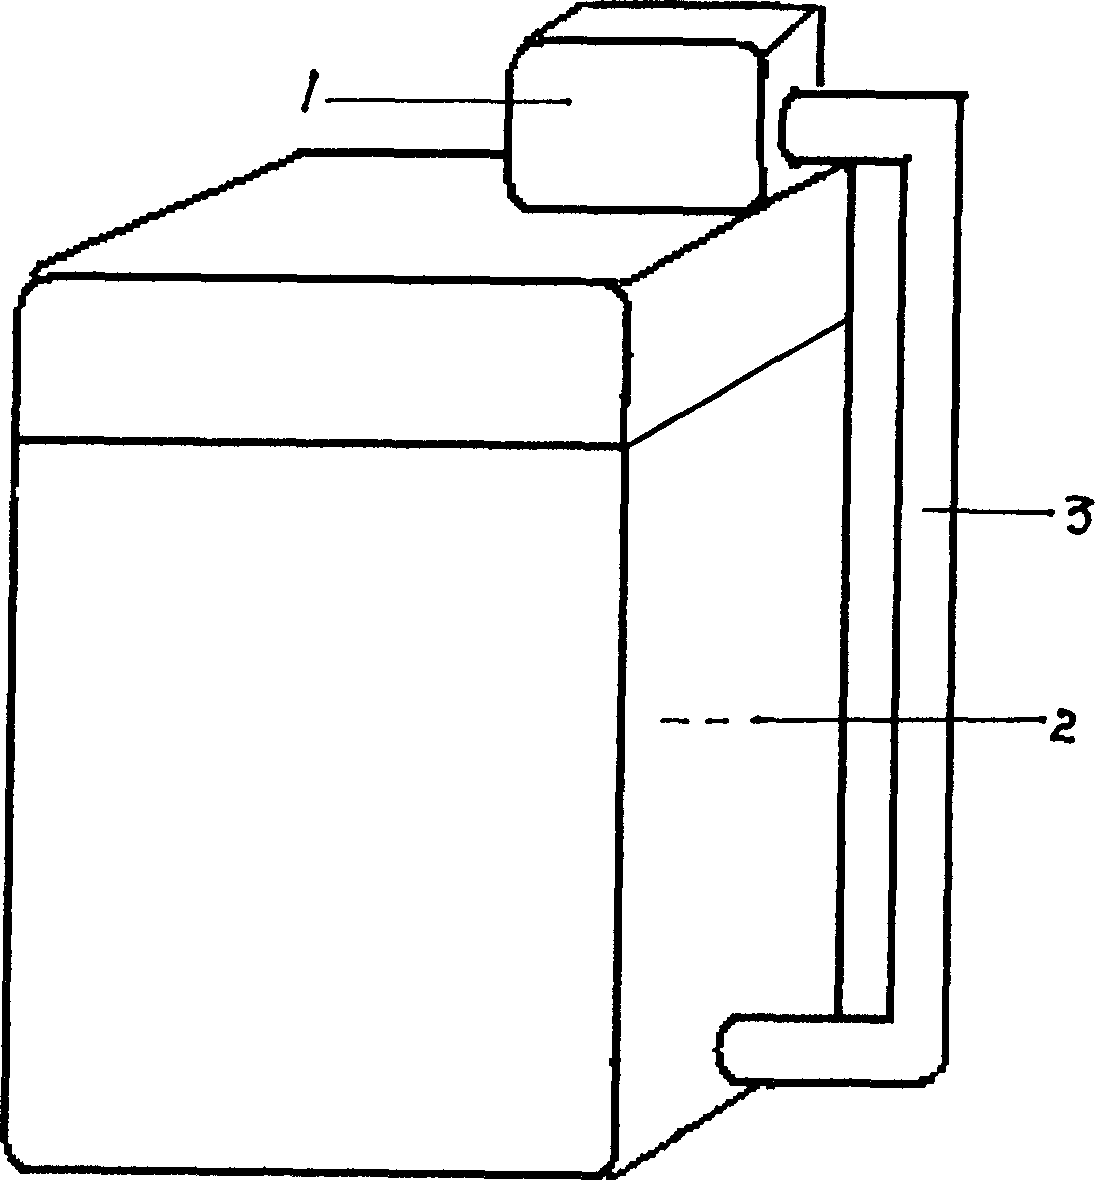 Method of washing fabric using machine and air type washing machine